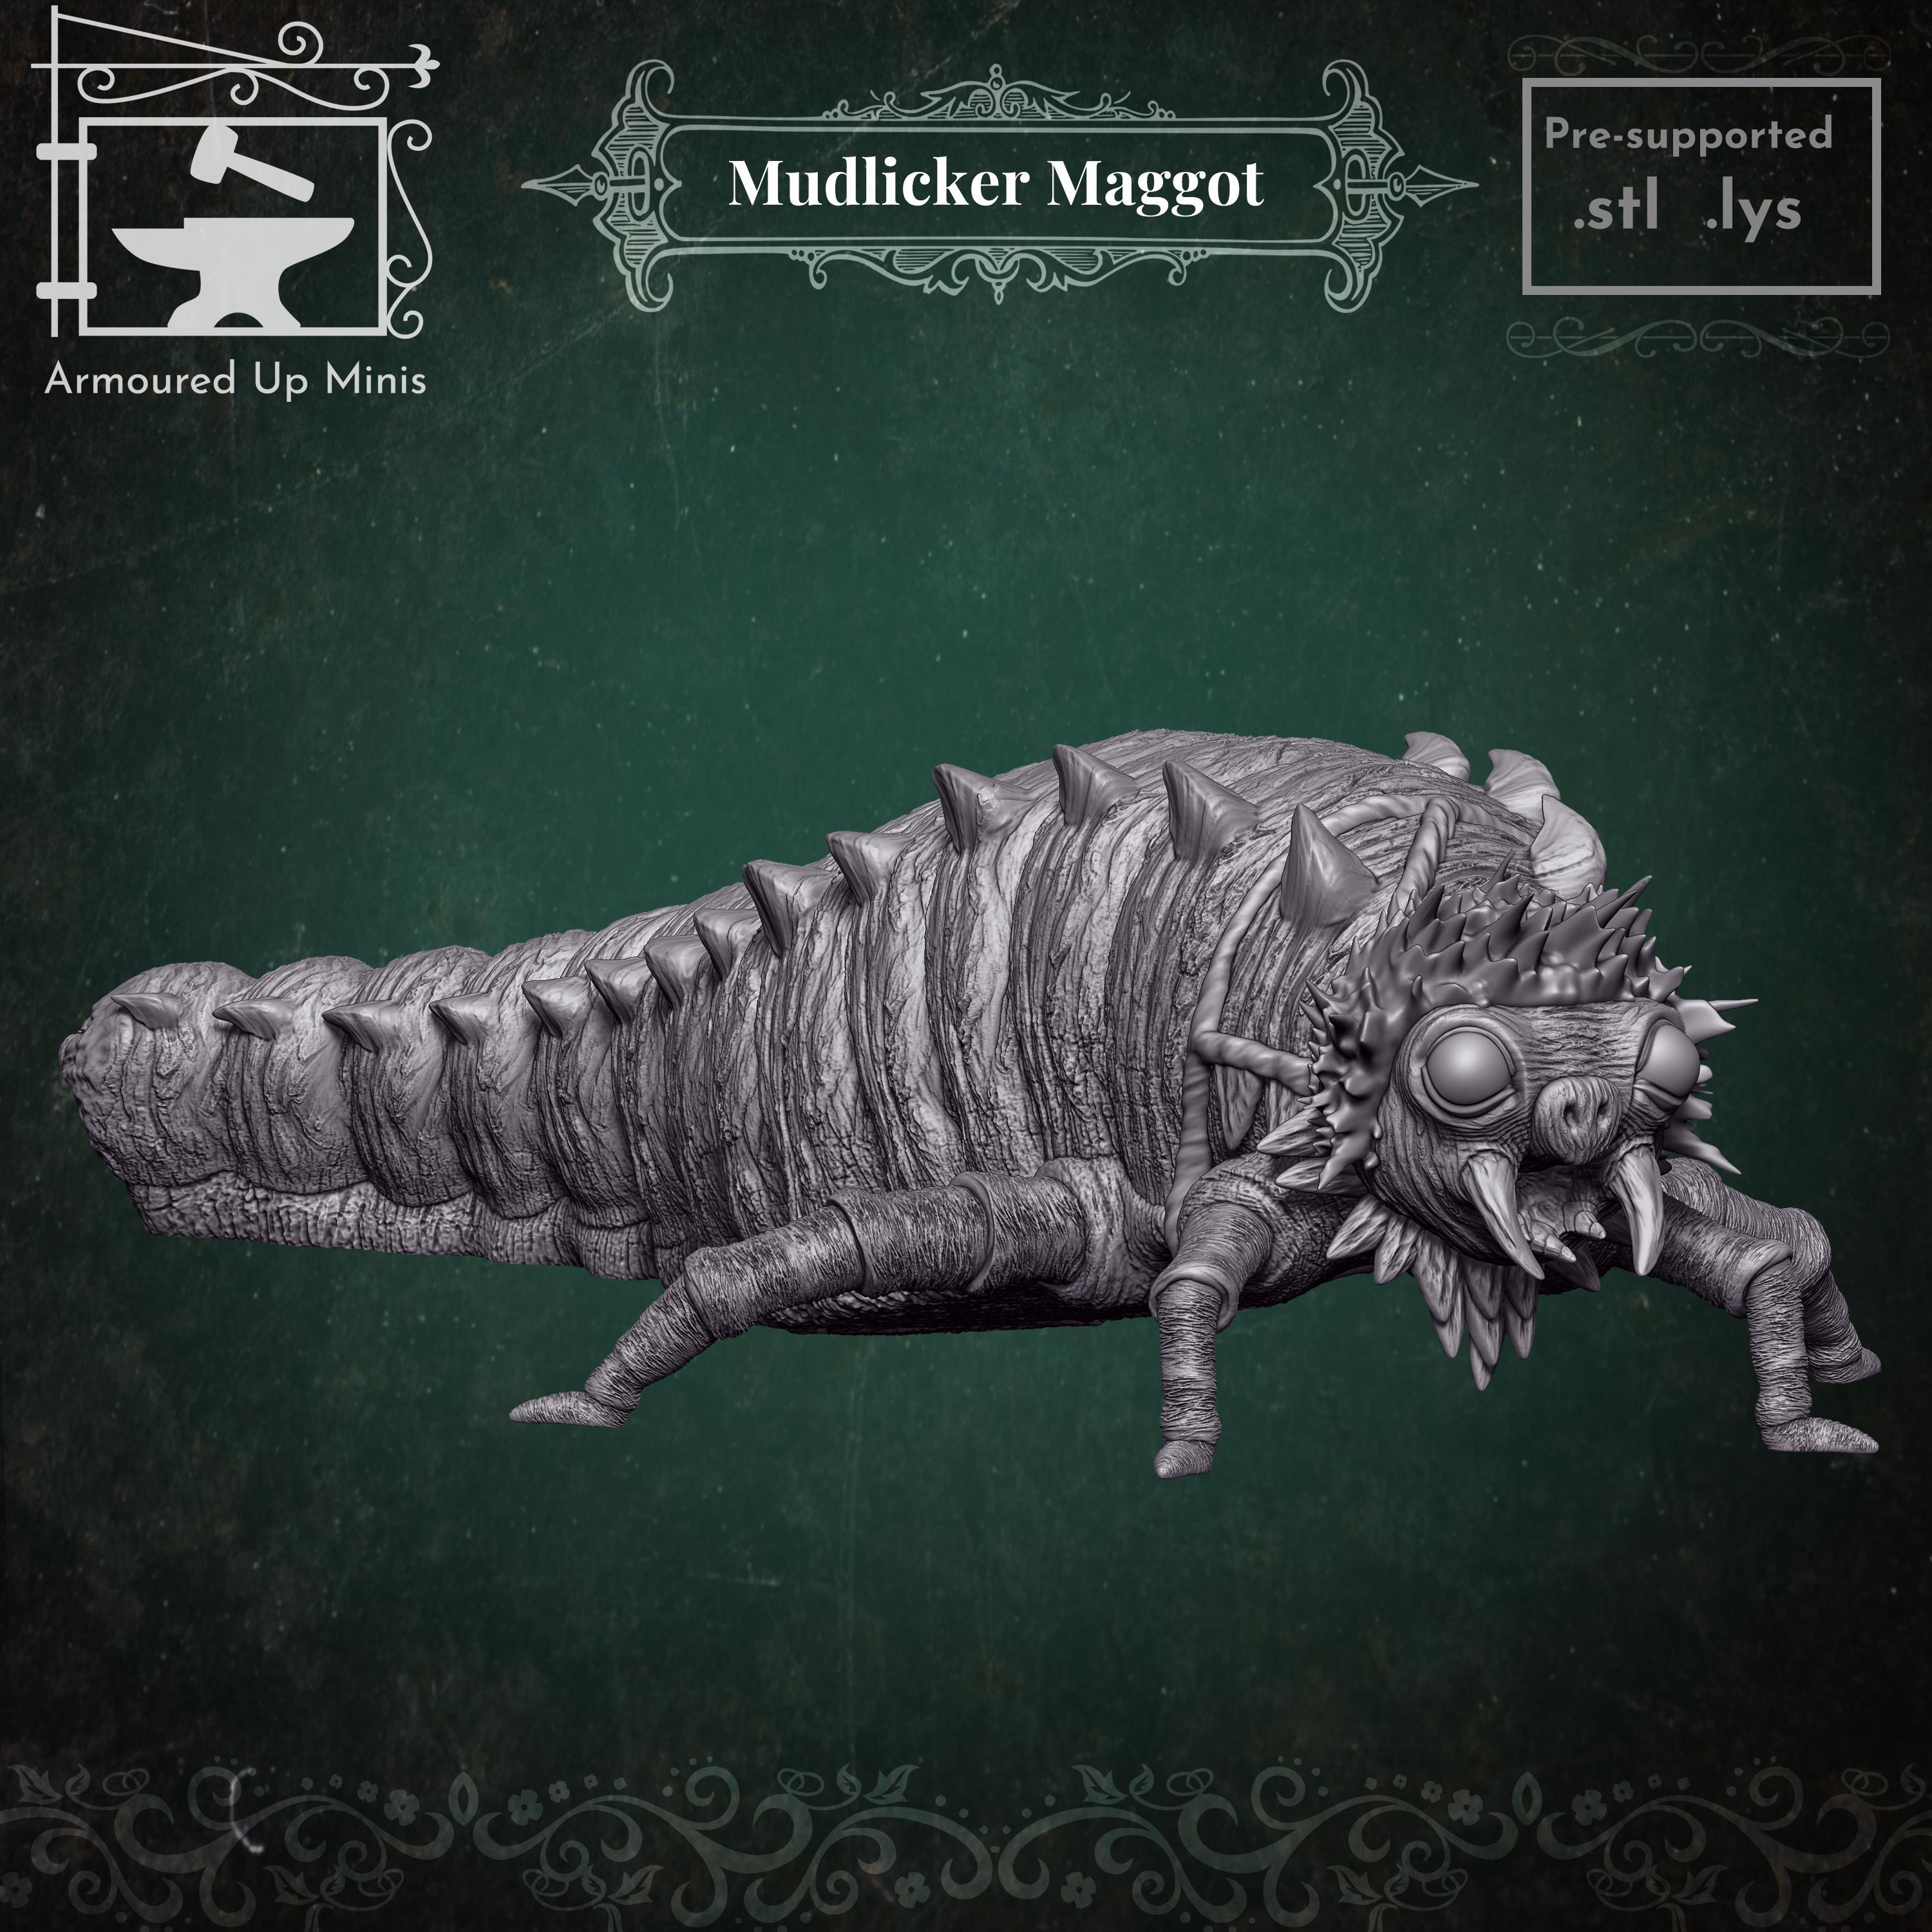 Mudlicker Maggot 3d model